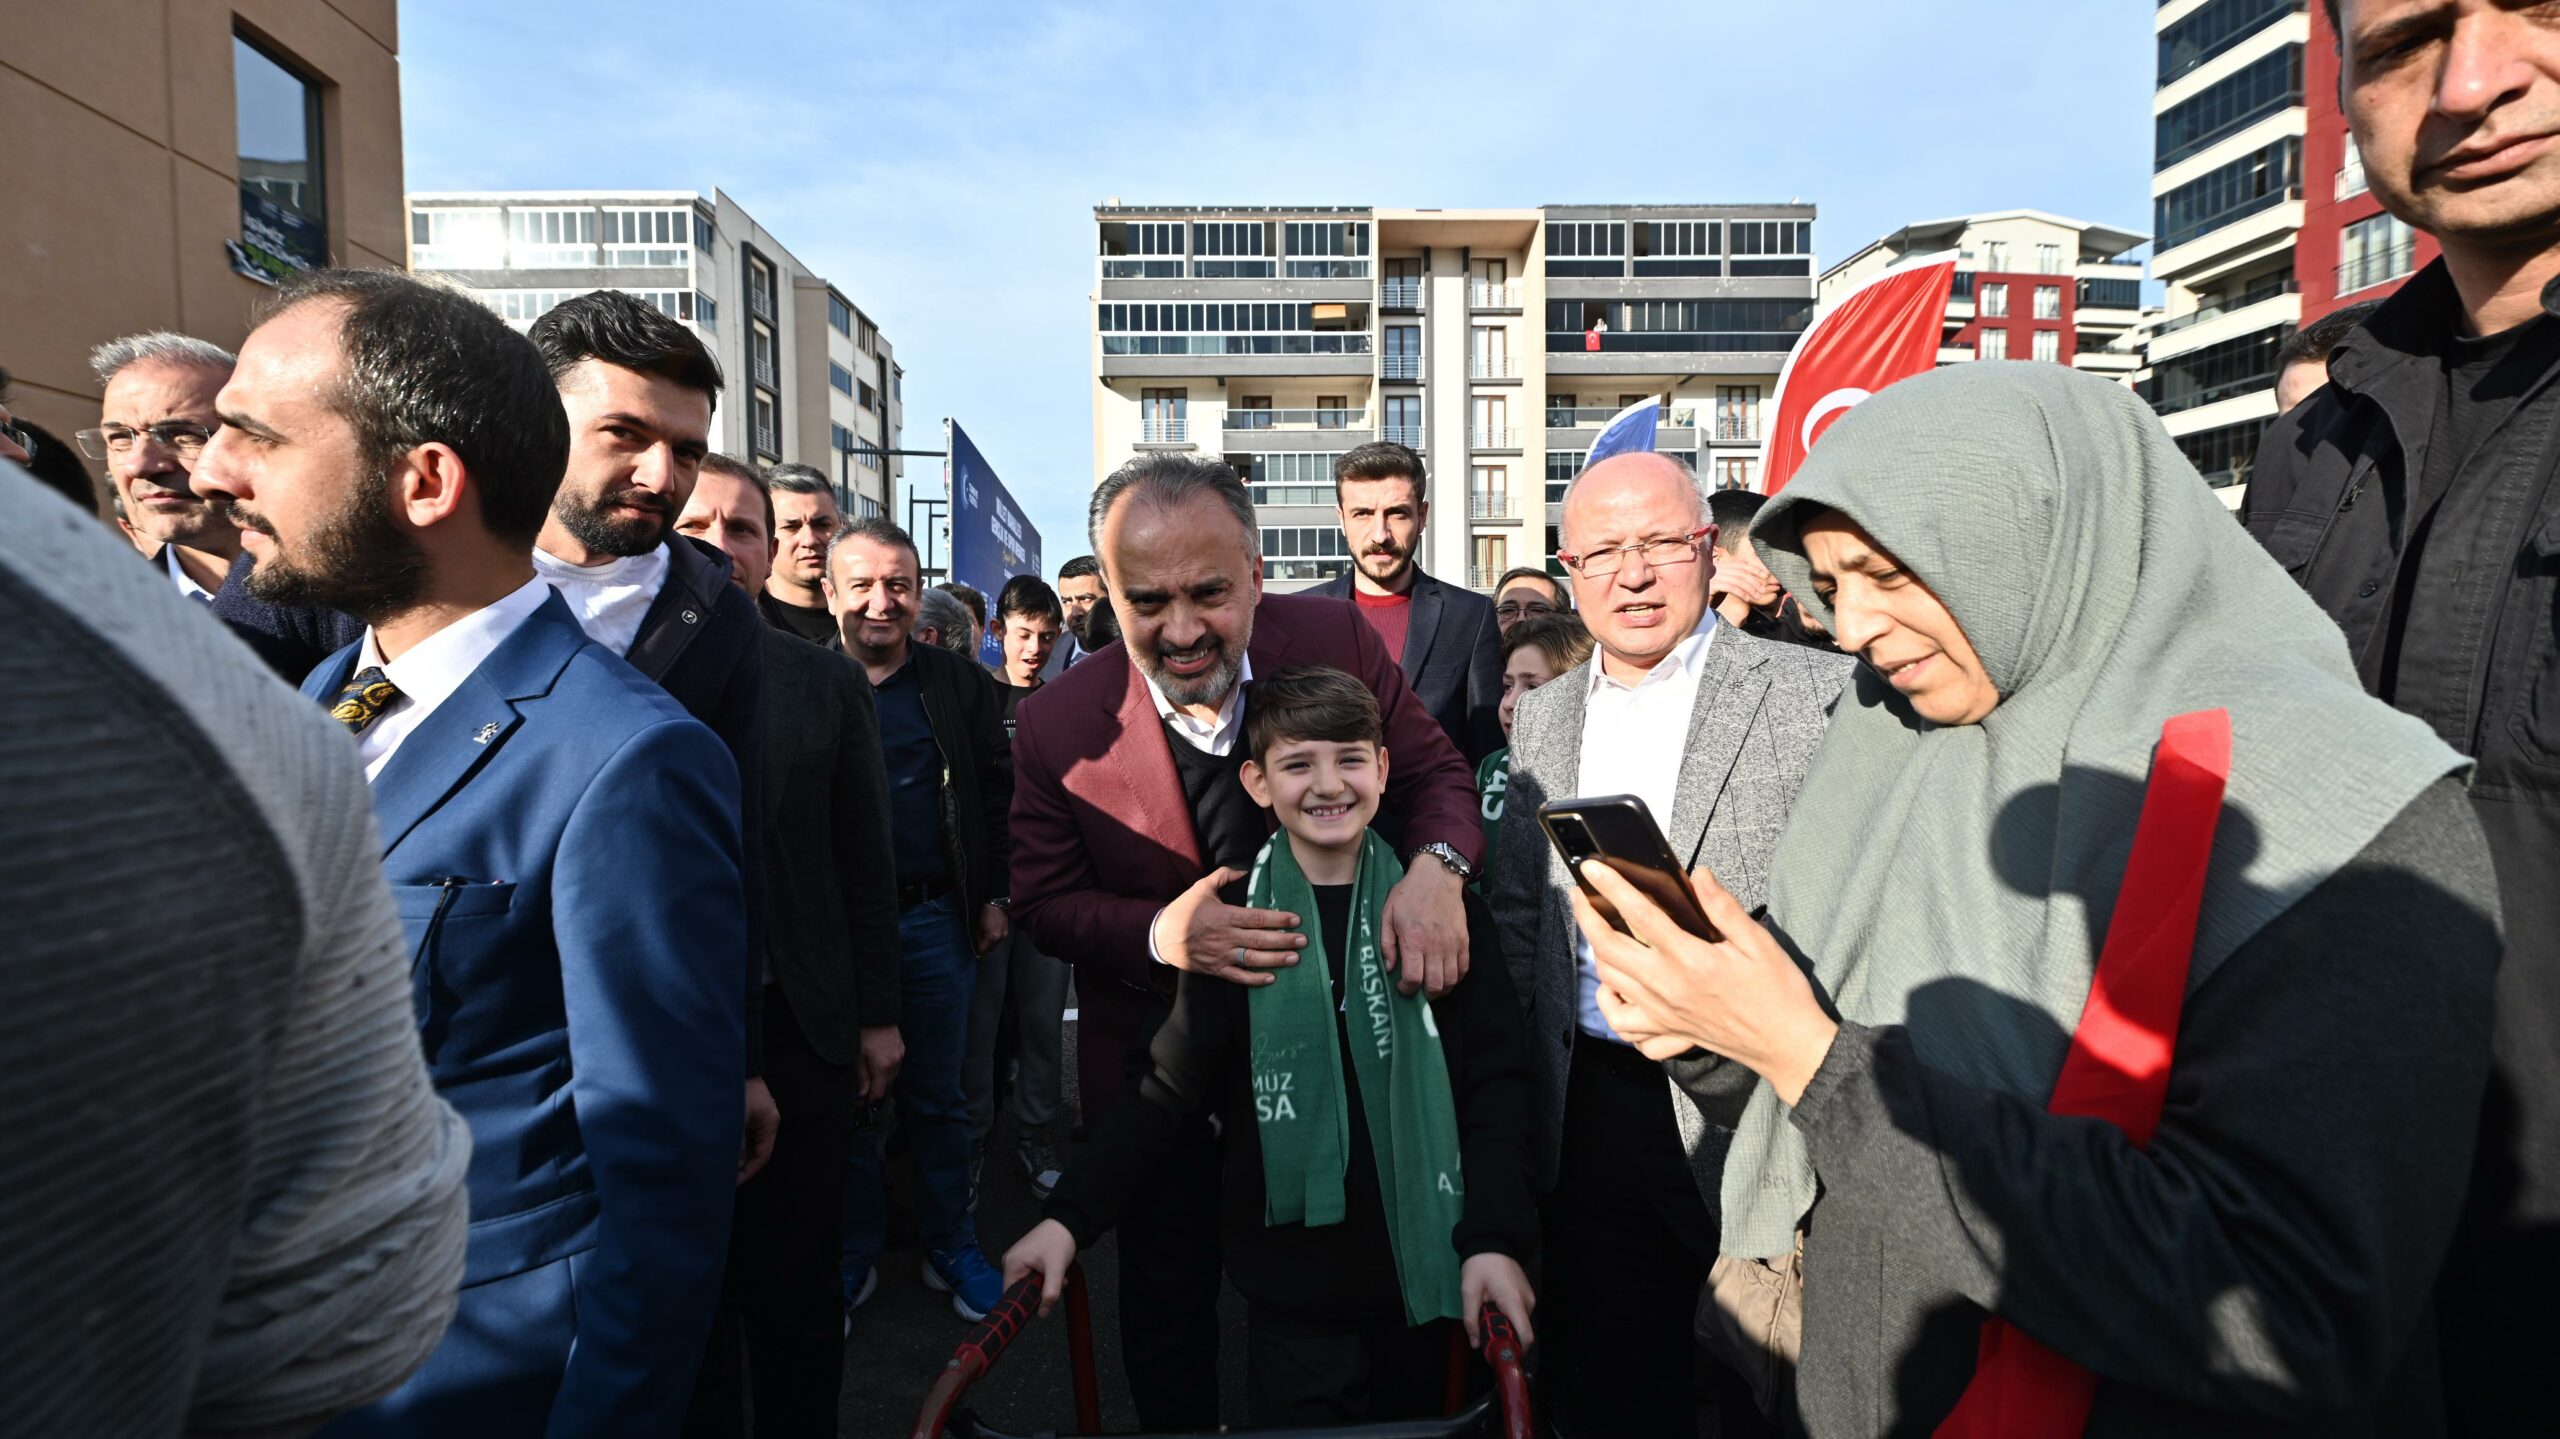 Bursa Büyükşehir Belediyesi, Yıldırım’a bir gençlik ve spor merkezi daha kazandırdı